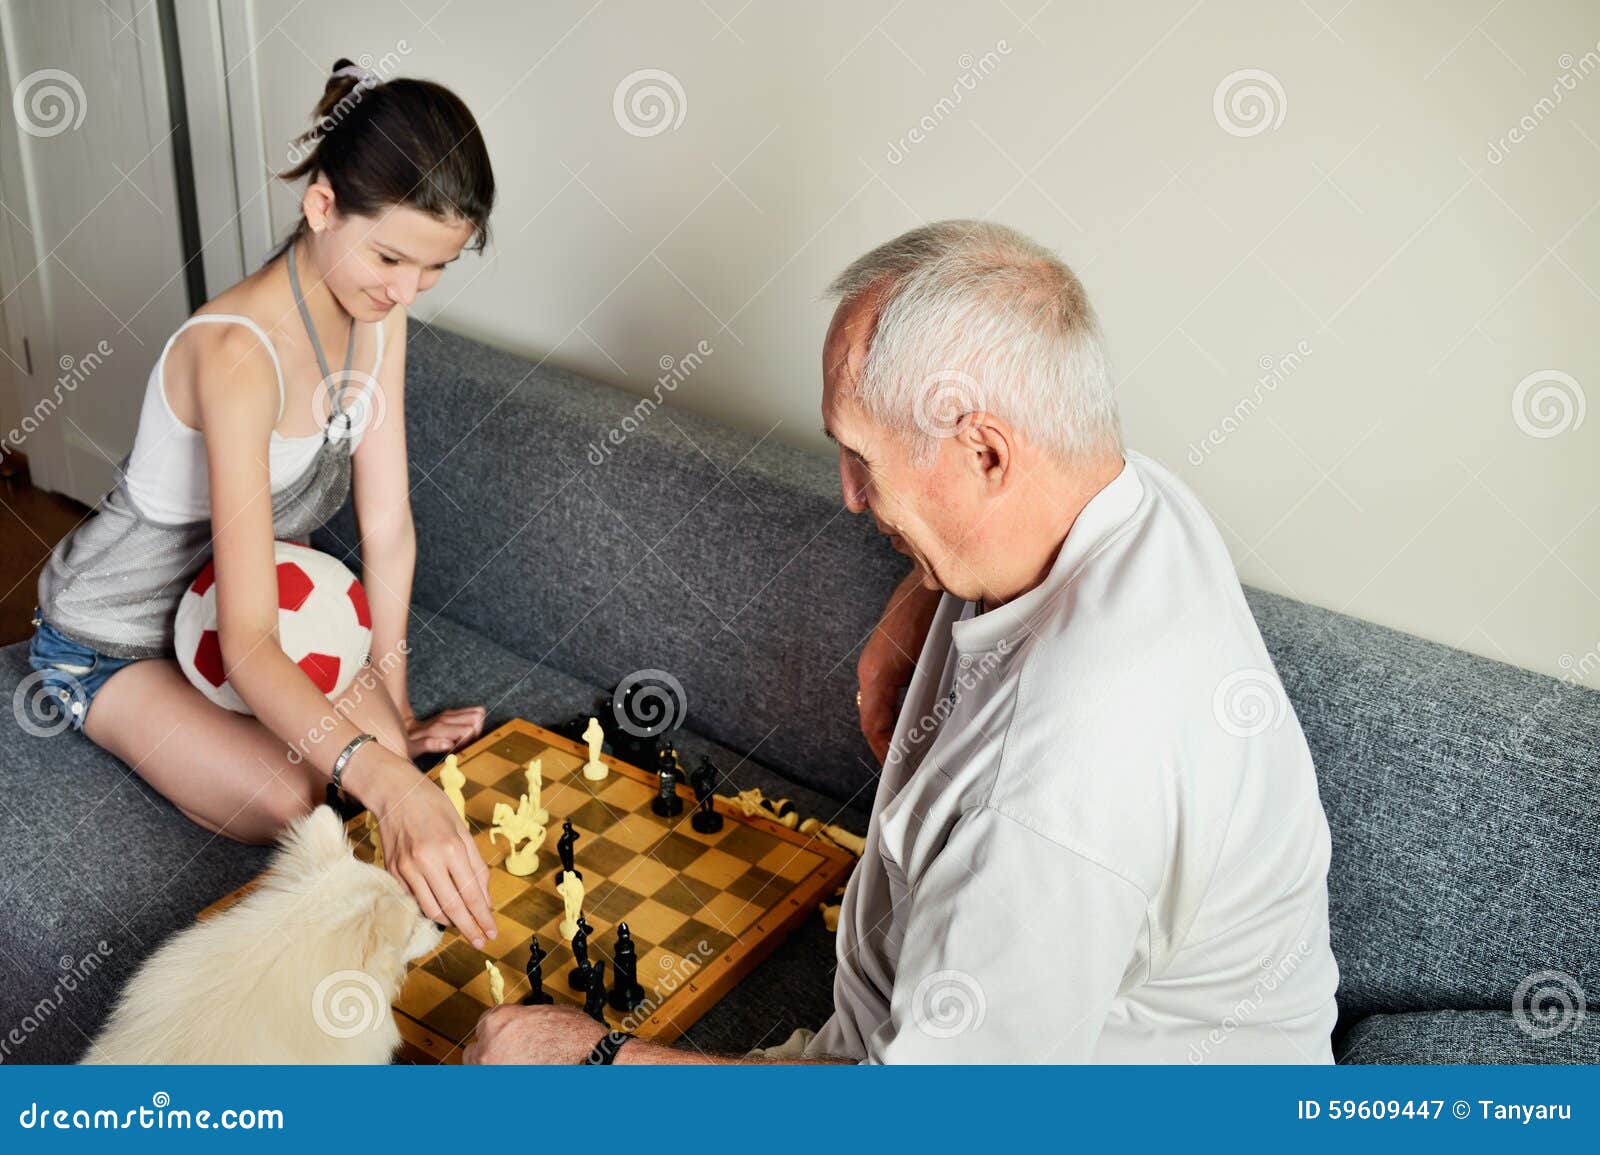 Карты на раздевание с мамой. Дед играет в карты. Дедушки играют в карты. Дедушка с внучкоиграют в шахматы. Дед играет на раздевание.